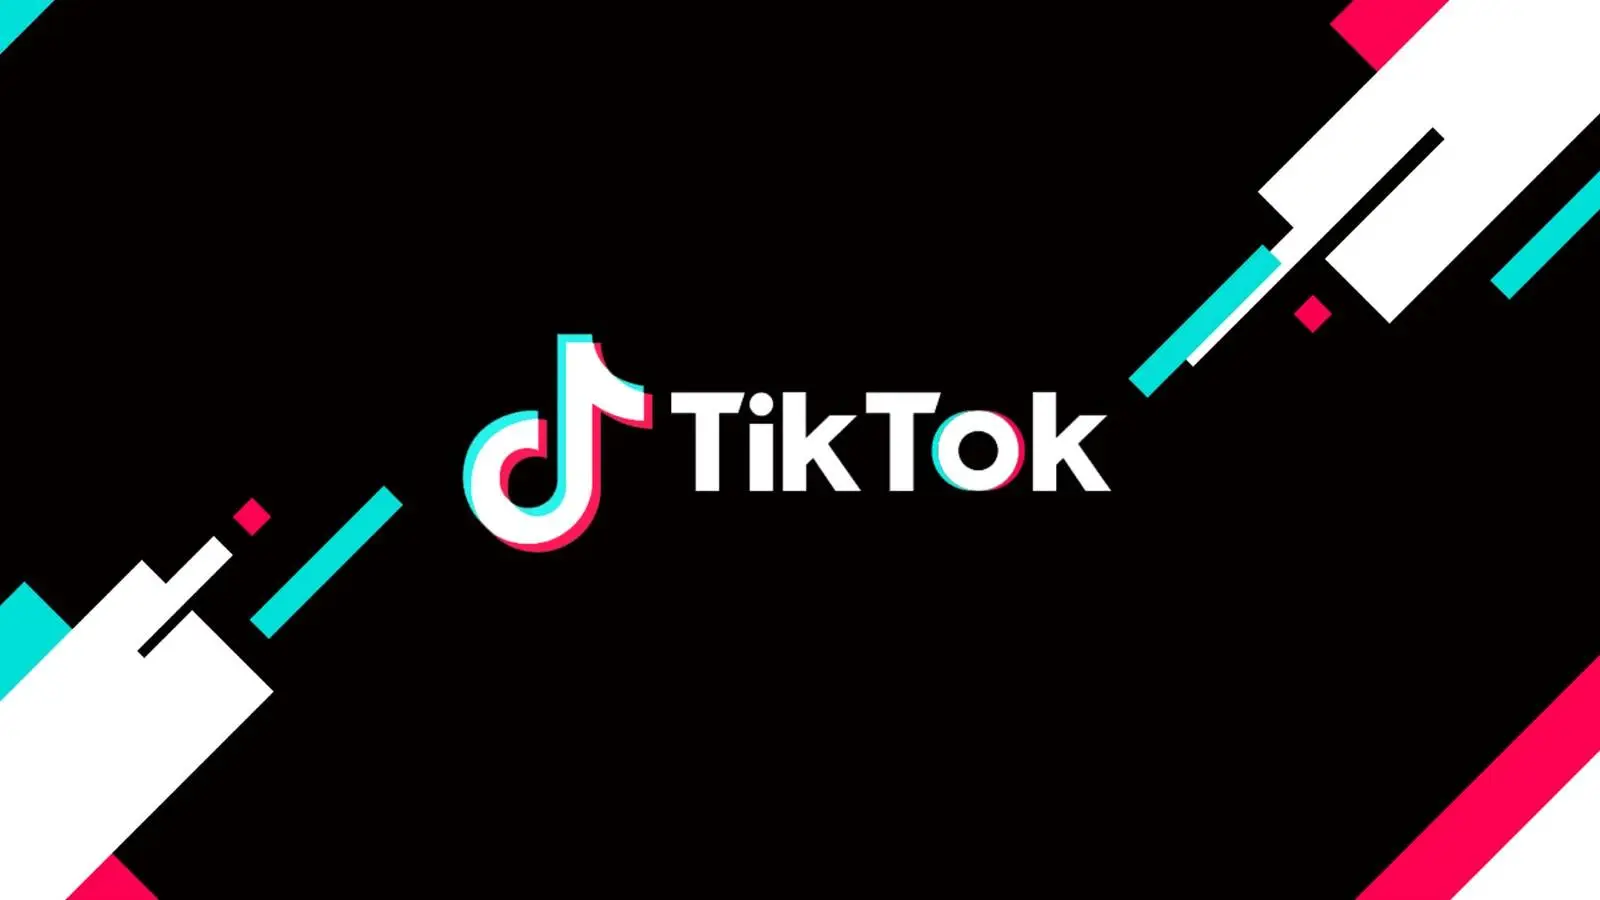 TikTok continúa luchando contra la desinformación para proteger a los usuarios